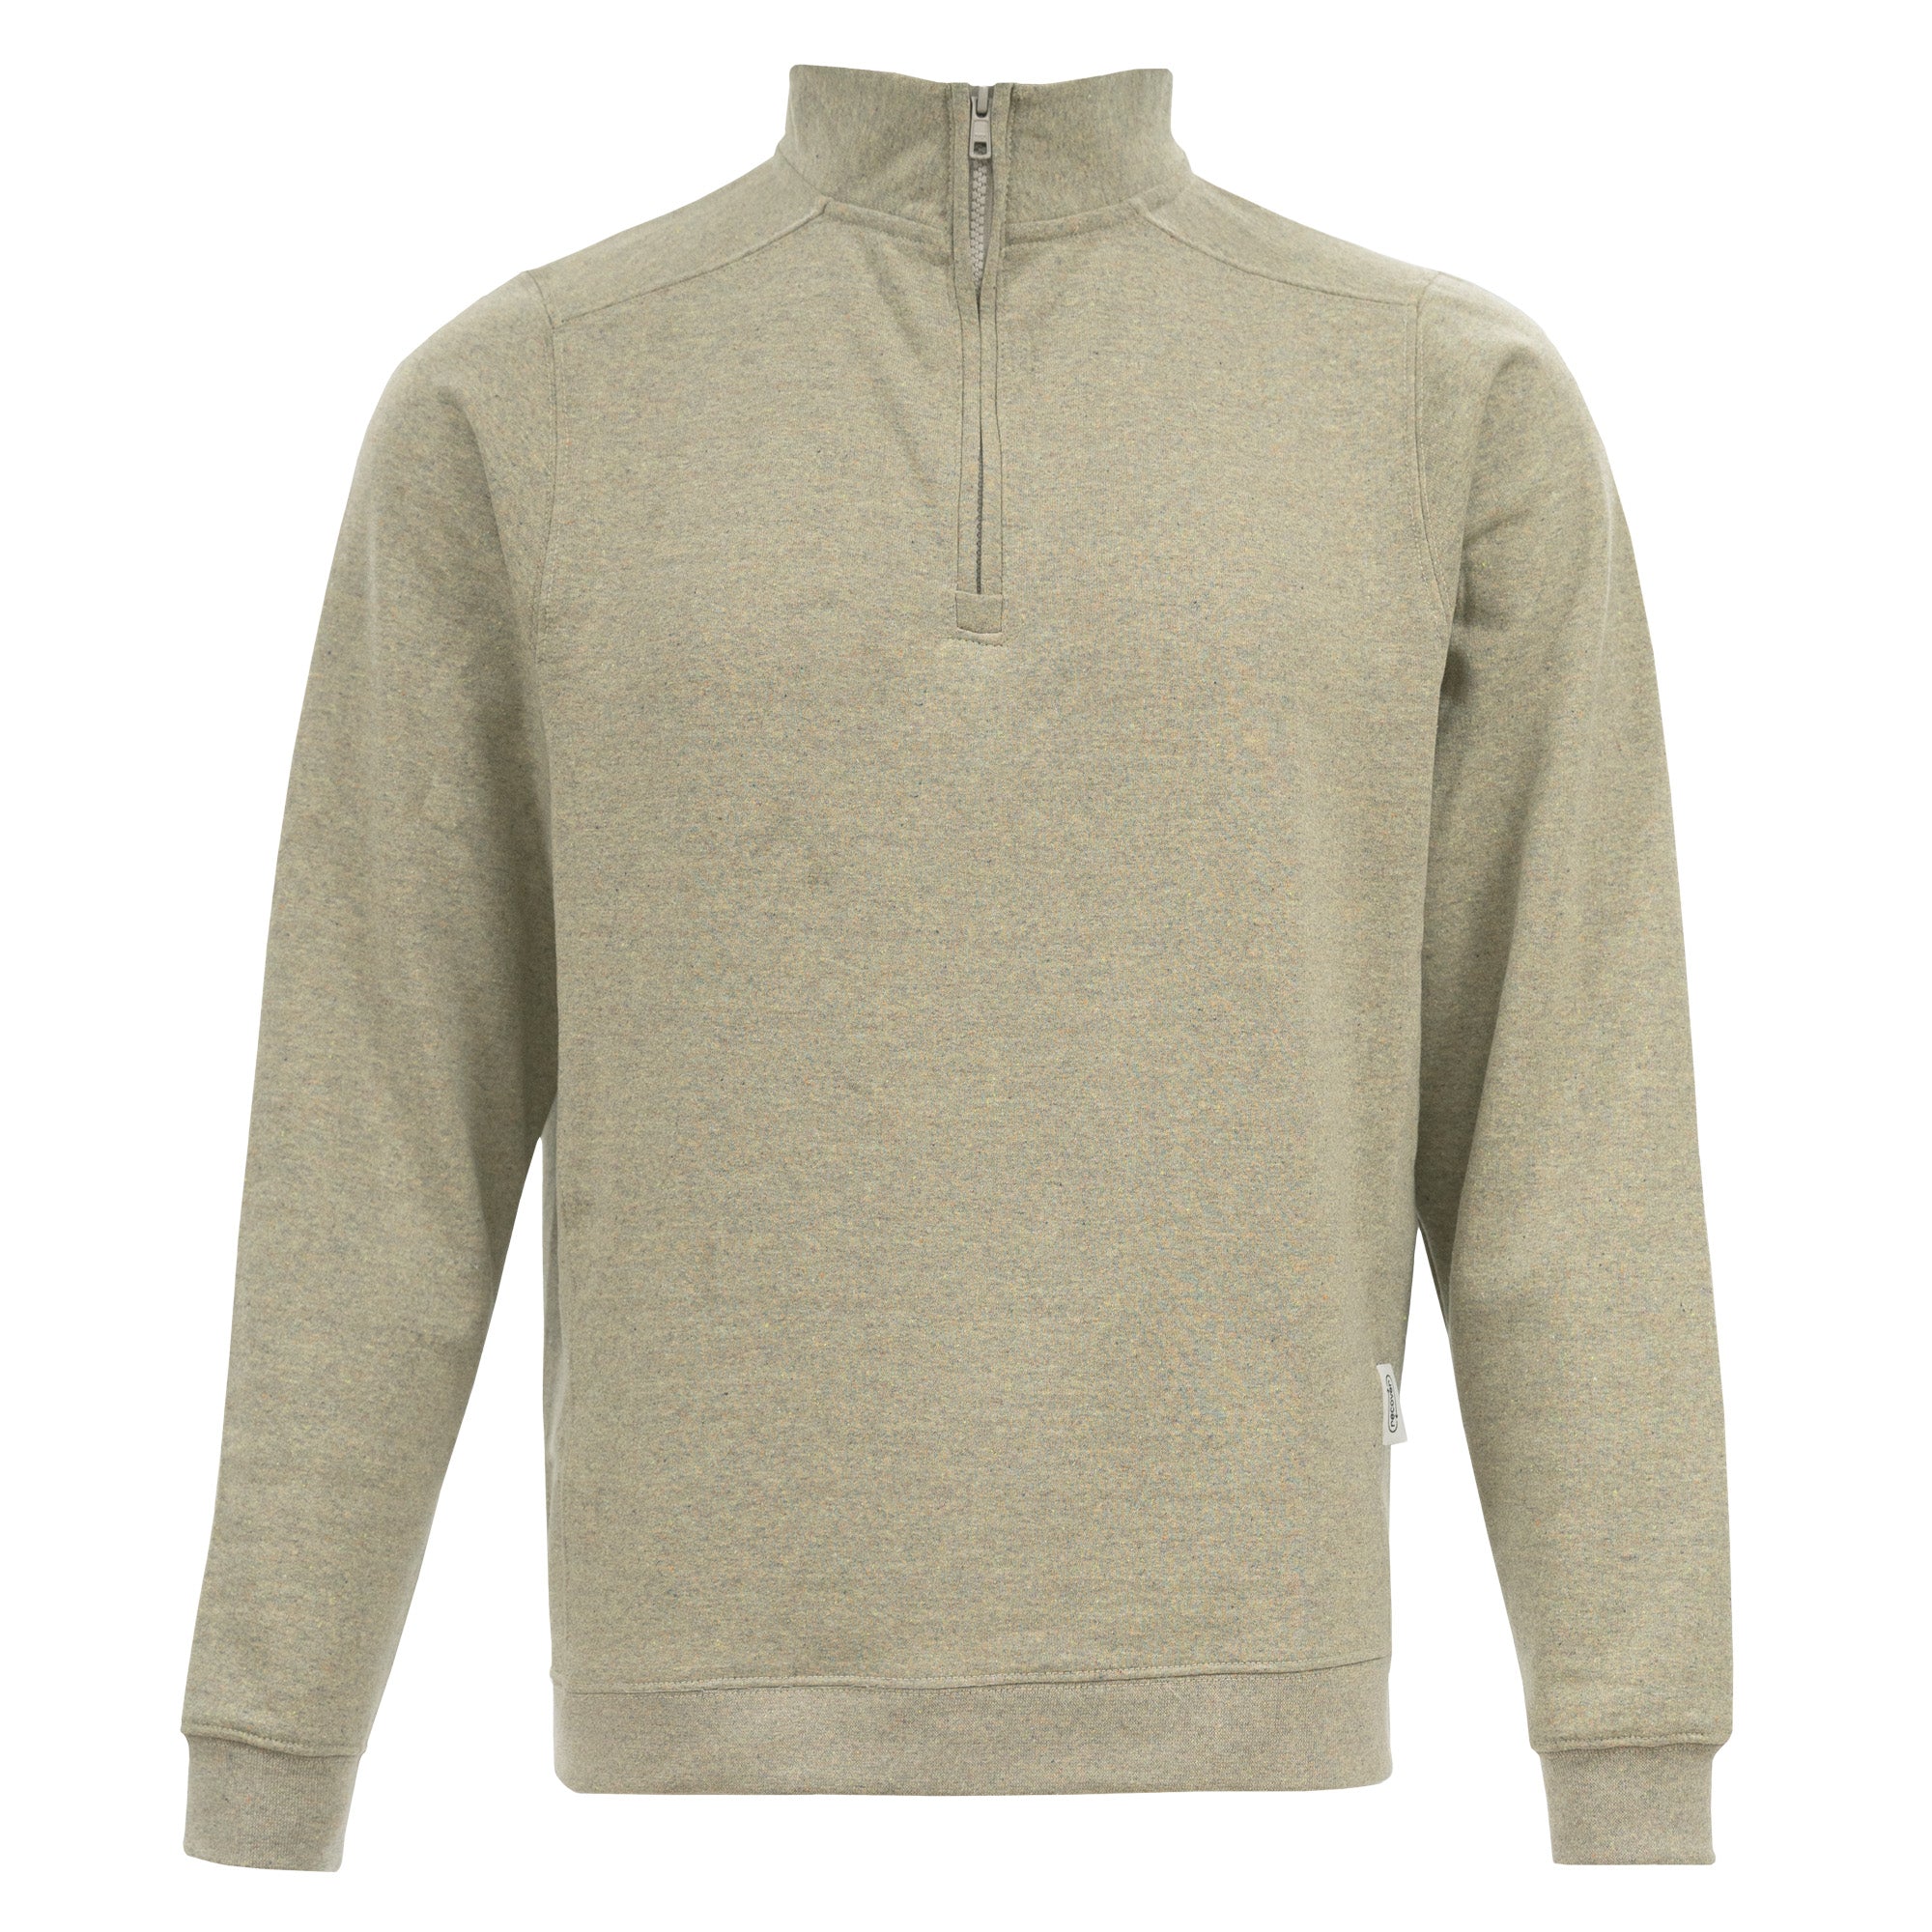 RC1096 - Unisex Quarter-Zip Fleece Sweatshirt